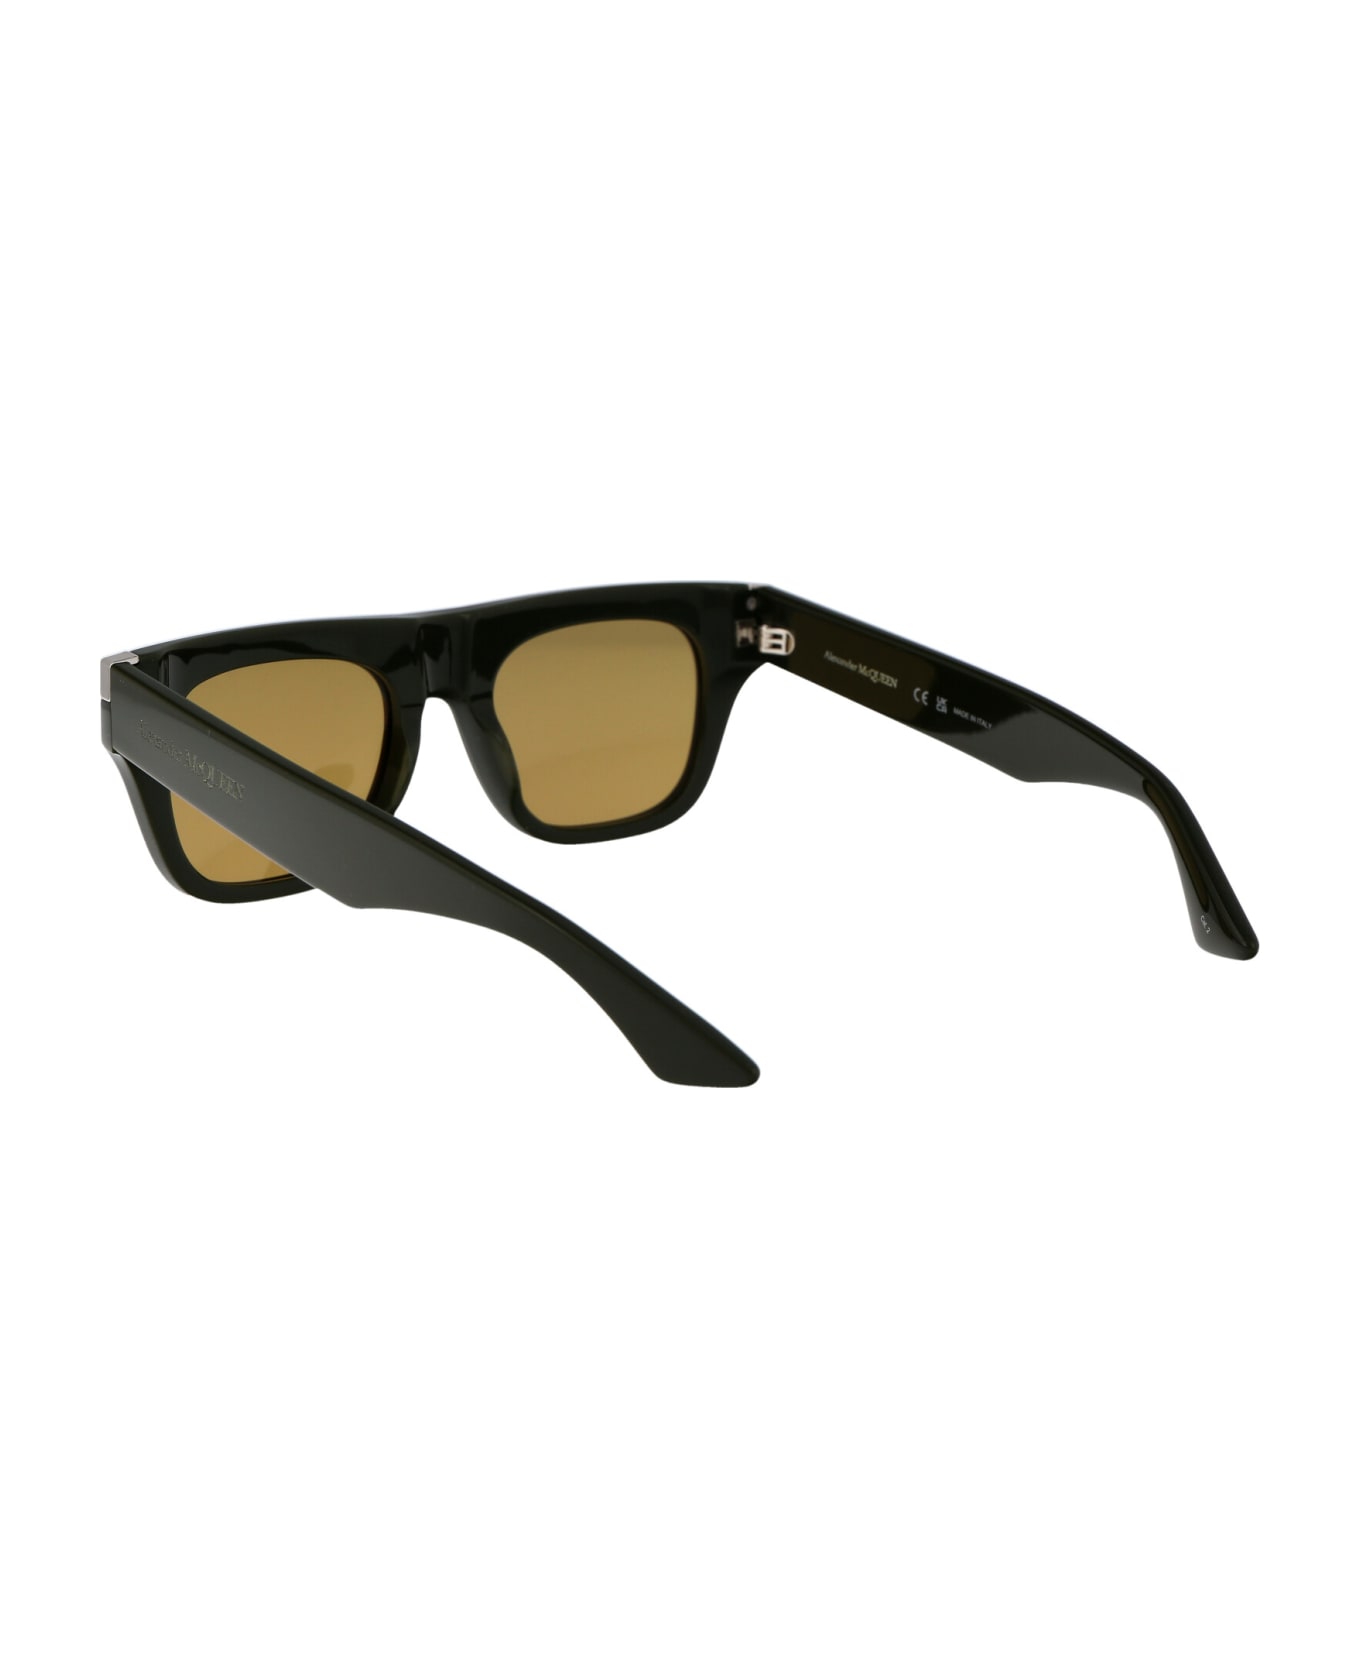 Alexander McQueen Eyewear Am0441s Sunglasses - 004 GREEN GREEN BROWN サングラス